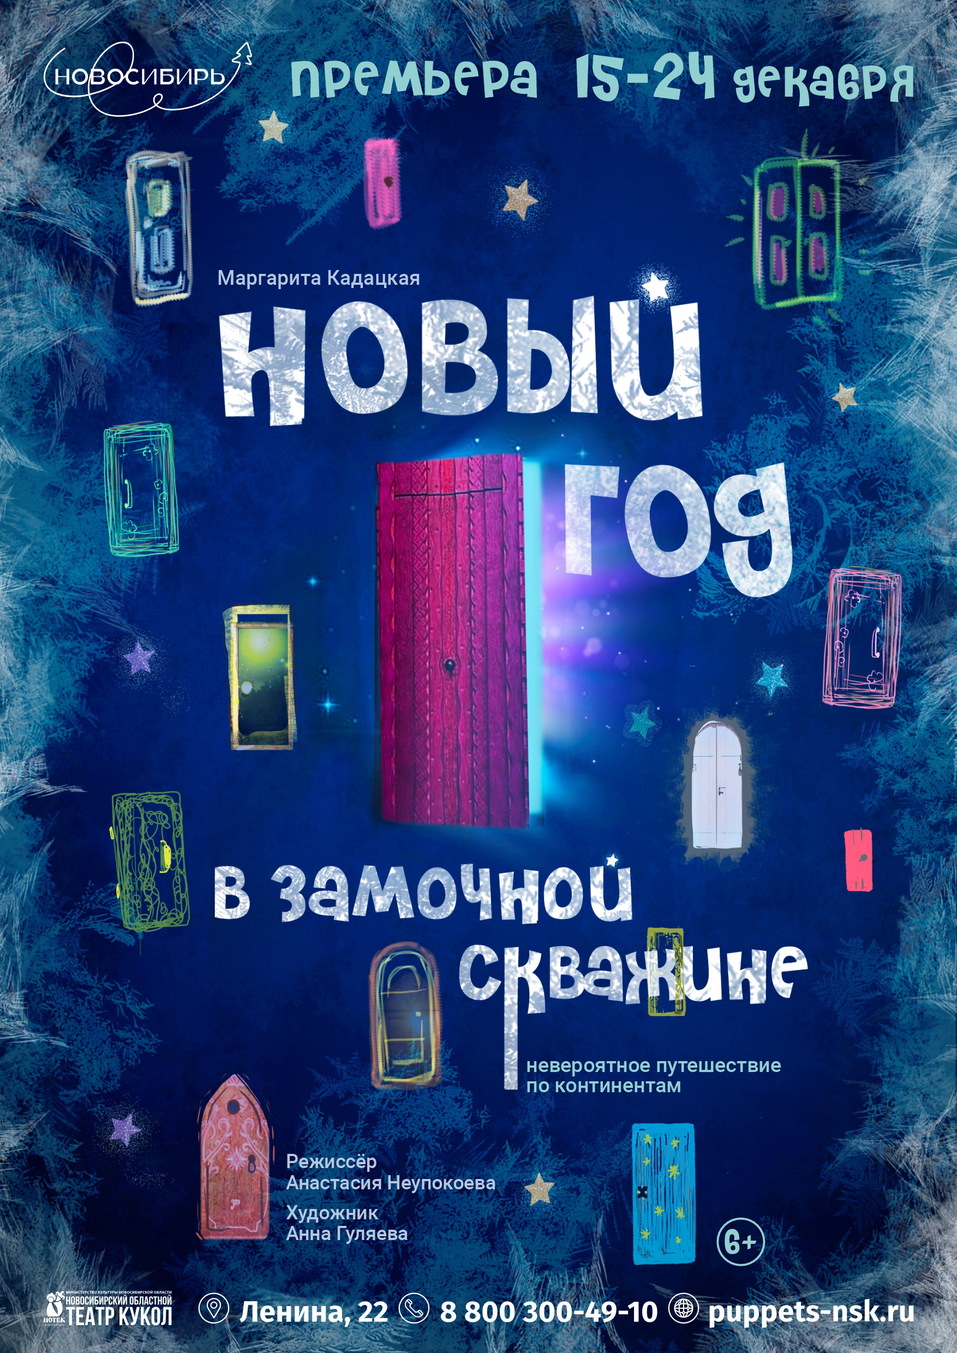 Топ-25 культурных событий Новосибирска для новогоднего настроения.  21